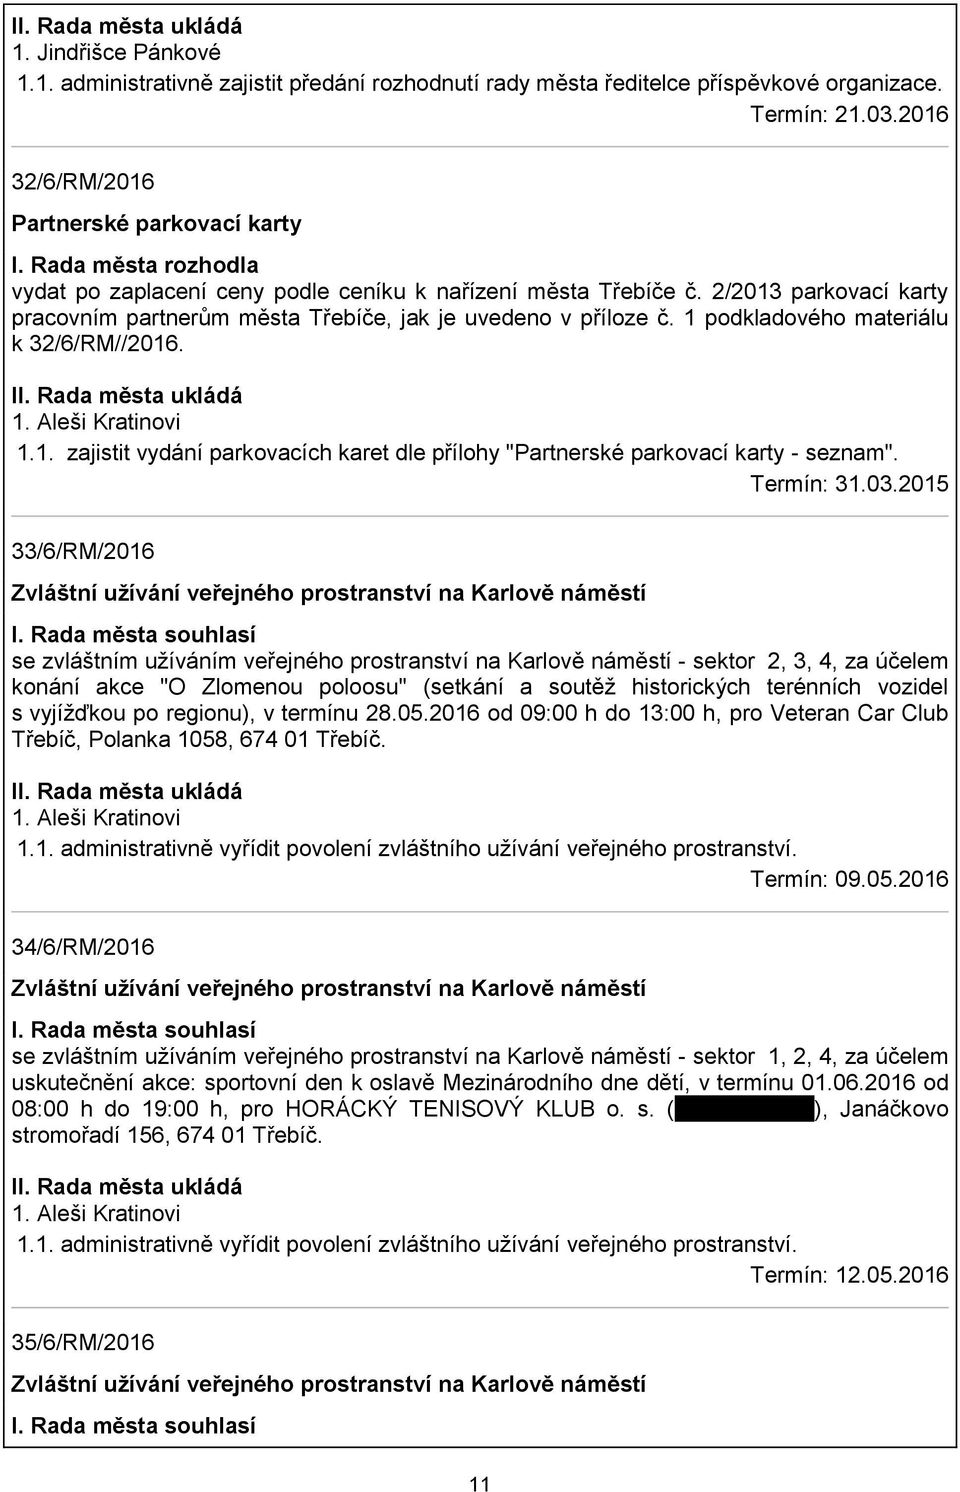 1 podkladového materiálu k 32/6/RM//2016. 1. Aleši Kratinovi 1.1. zajistit vydání parkovacích karet dle přílohy "Partnerské parkovací karty - seznam". Termín: 31.03.